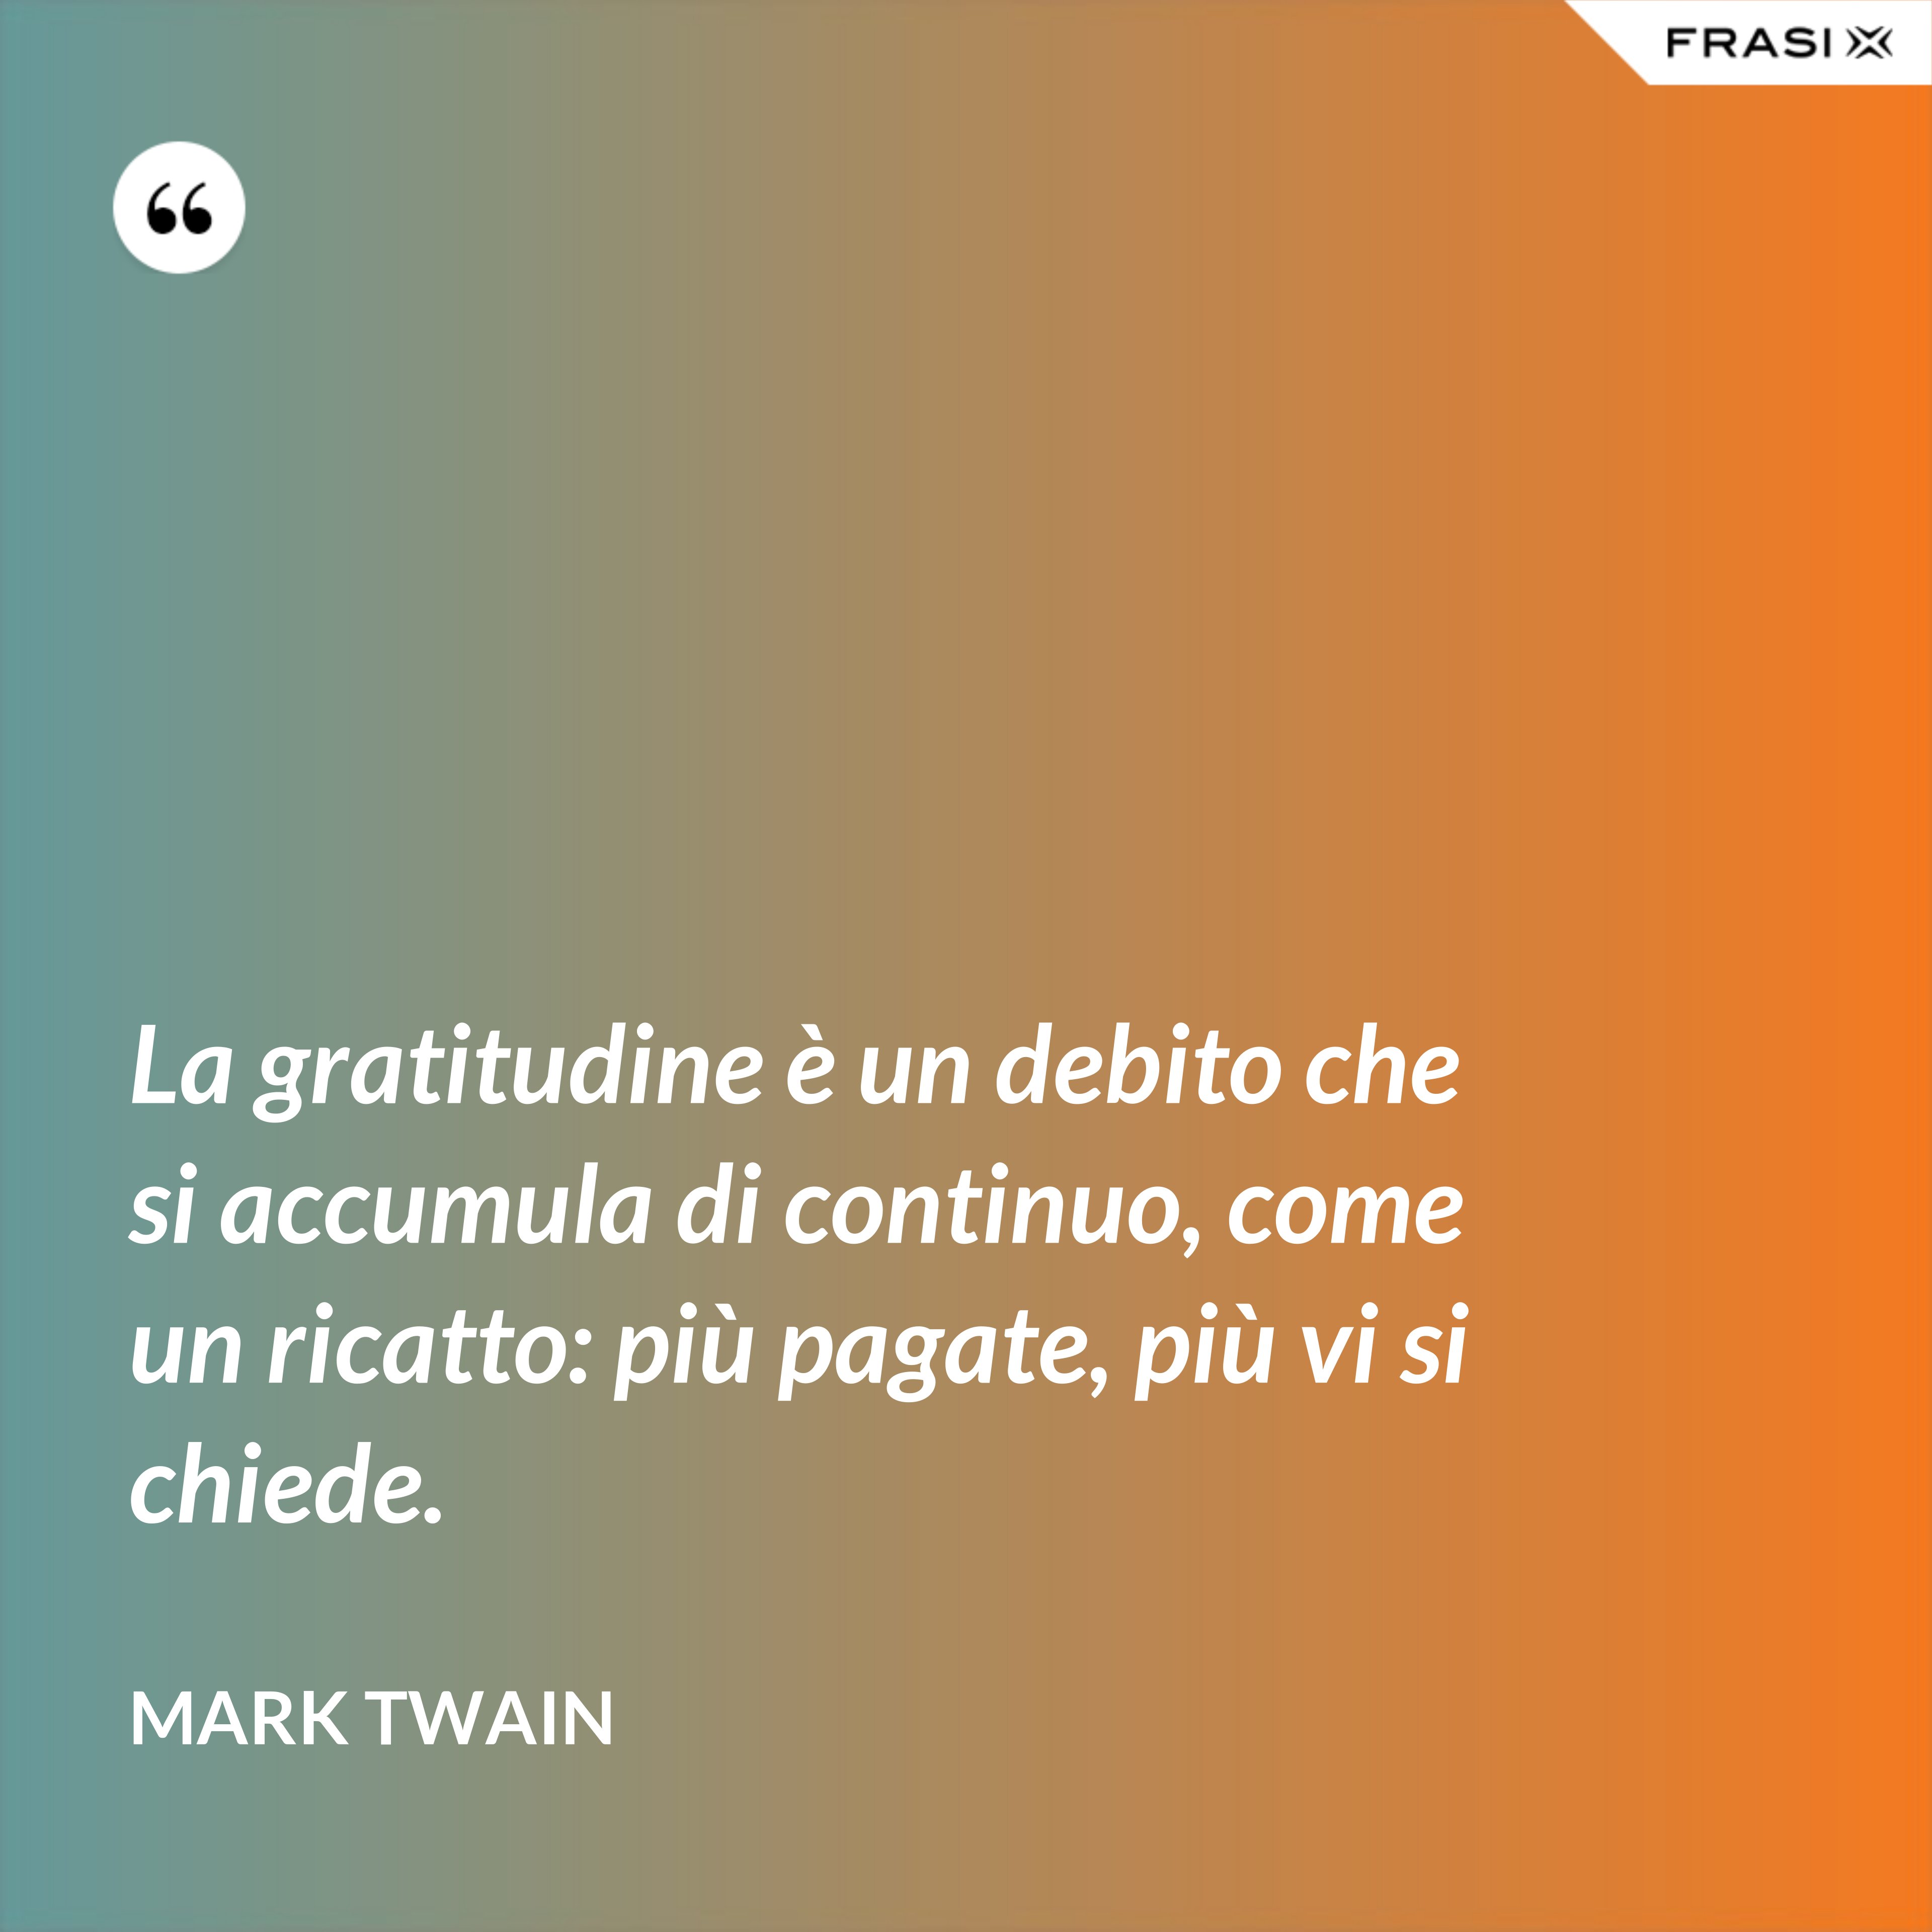 La gratitudine è un debito che si accumula di continuo, come un ricatto: più pagate, più vi si chiede. - Mark Twain